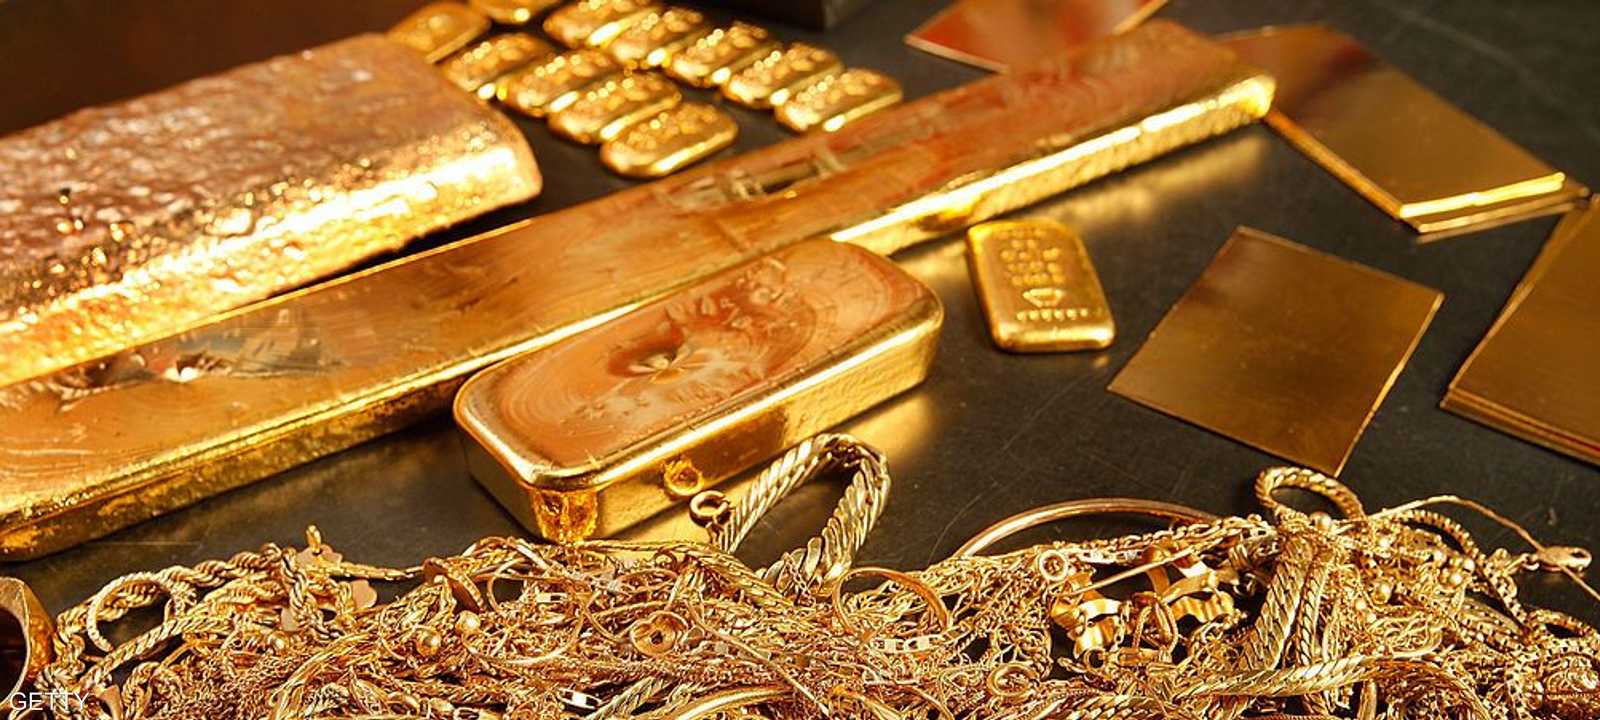 ارتفعت أسعار الذهب في مصر بشكل كبير